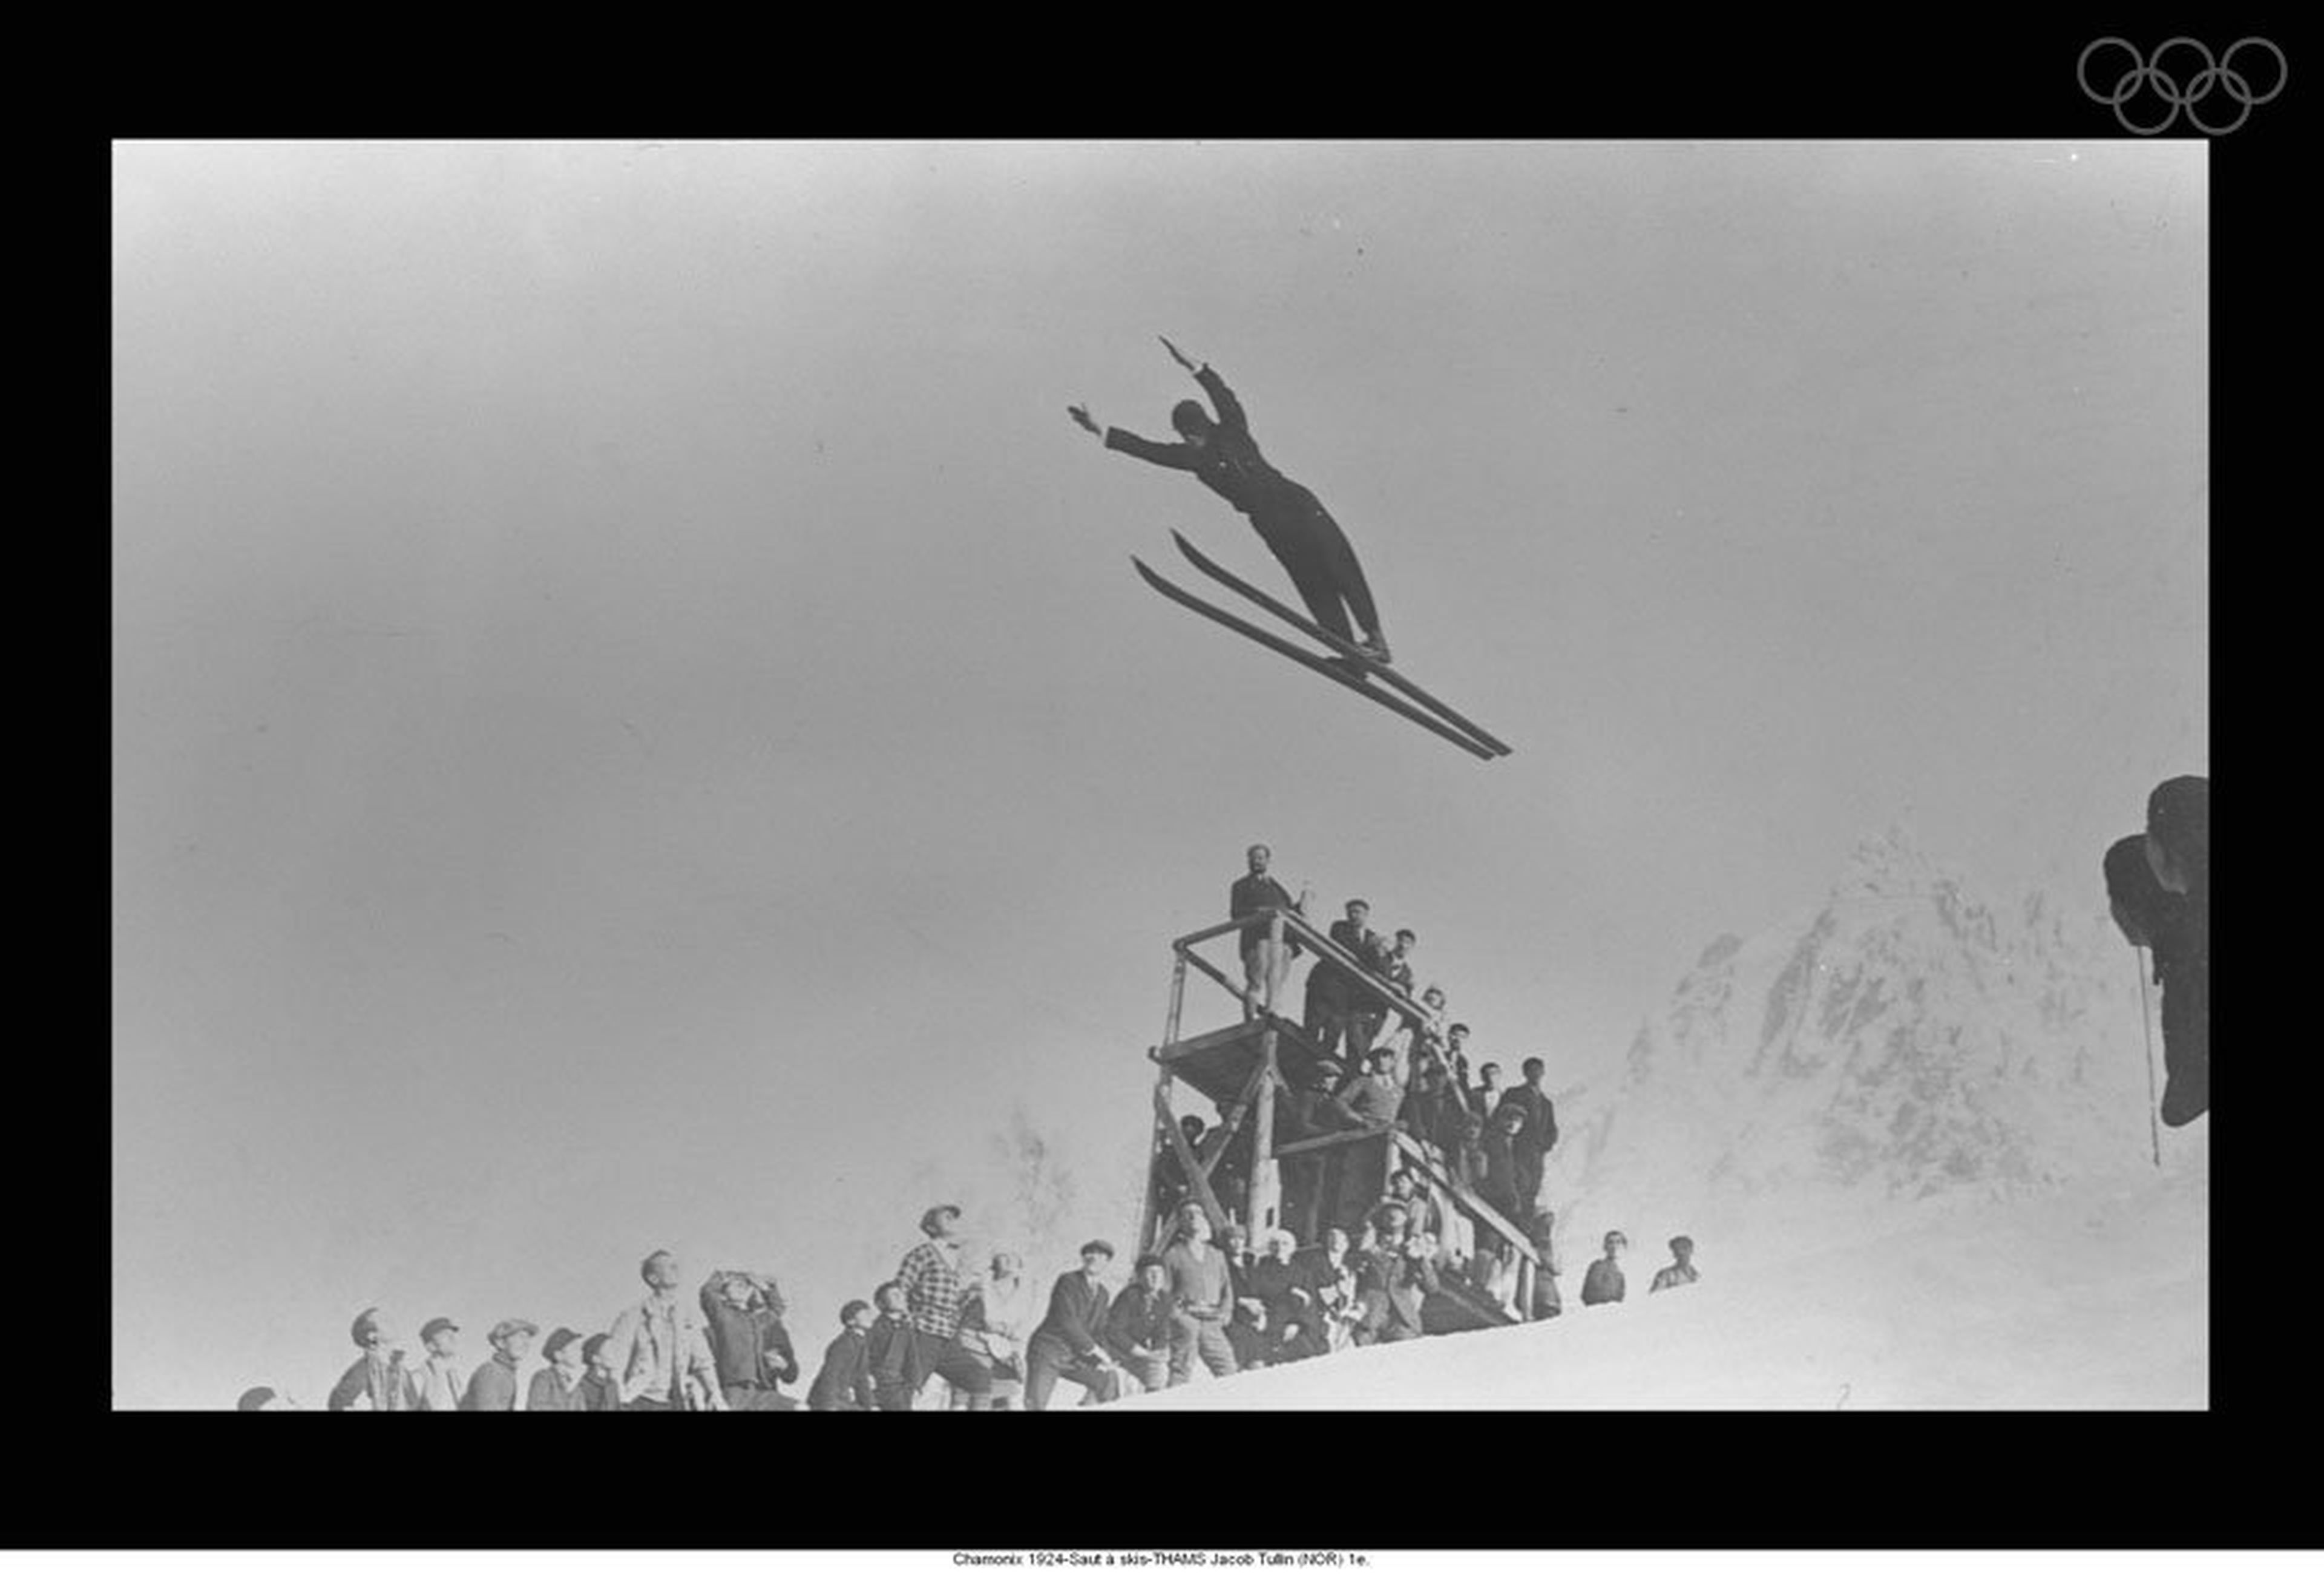 Tullin emplea la técnica Kongesberger en las Olimpiadas de Invierno de 1924.